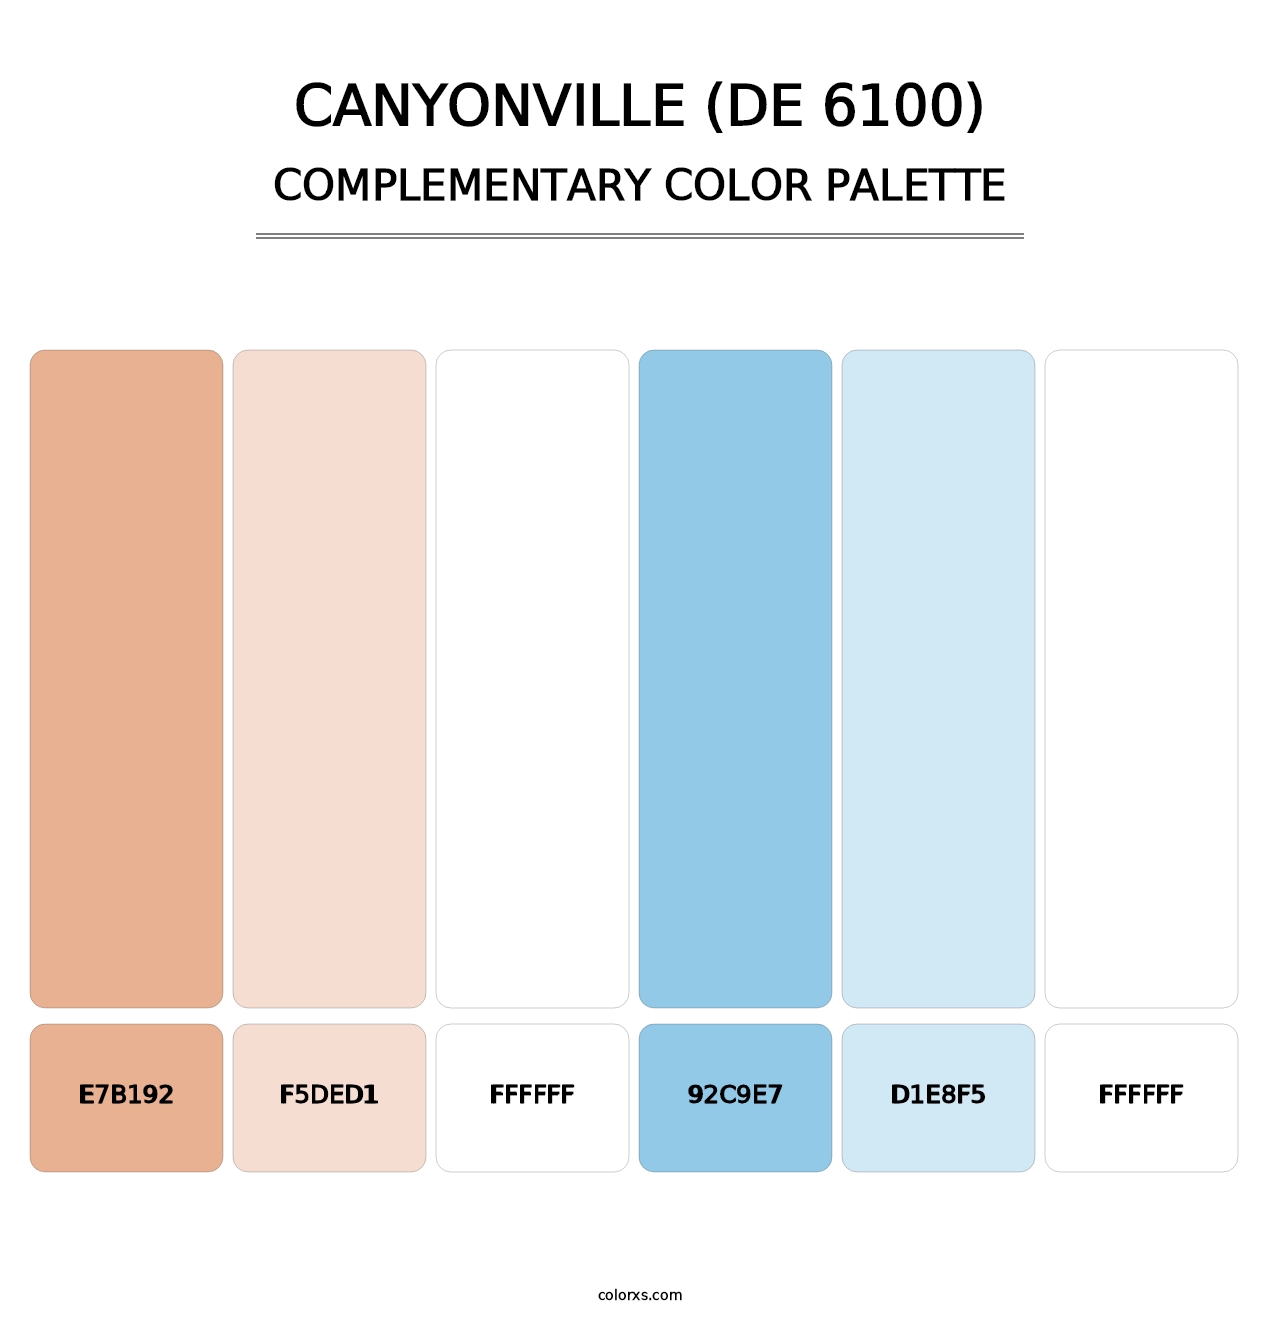 Canyonville (DE 6100) - Complementary Color Palette